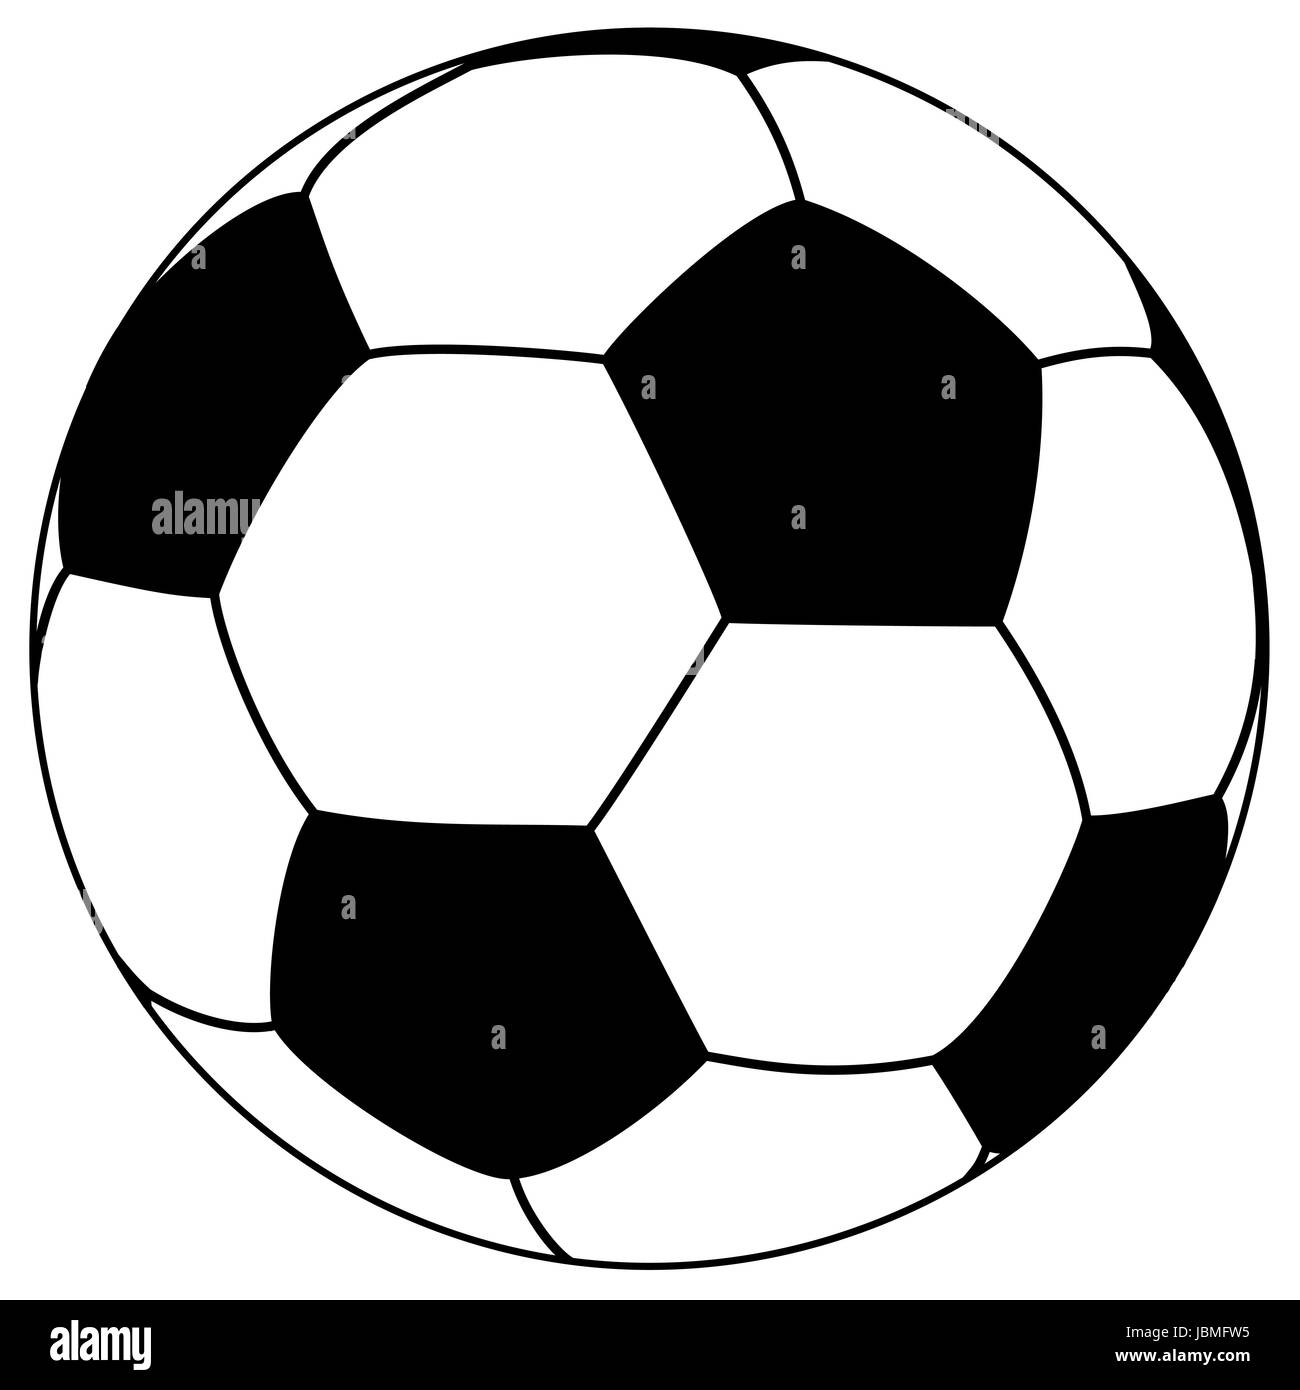 schwarz-weiß-Fußball einfach Vektor-illustration Stockfotografie - Alamy